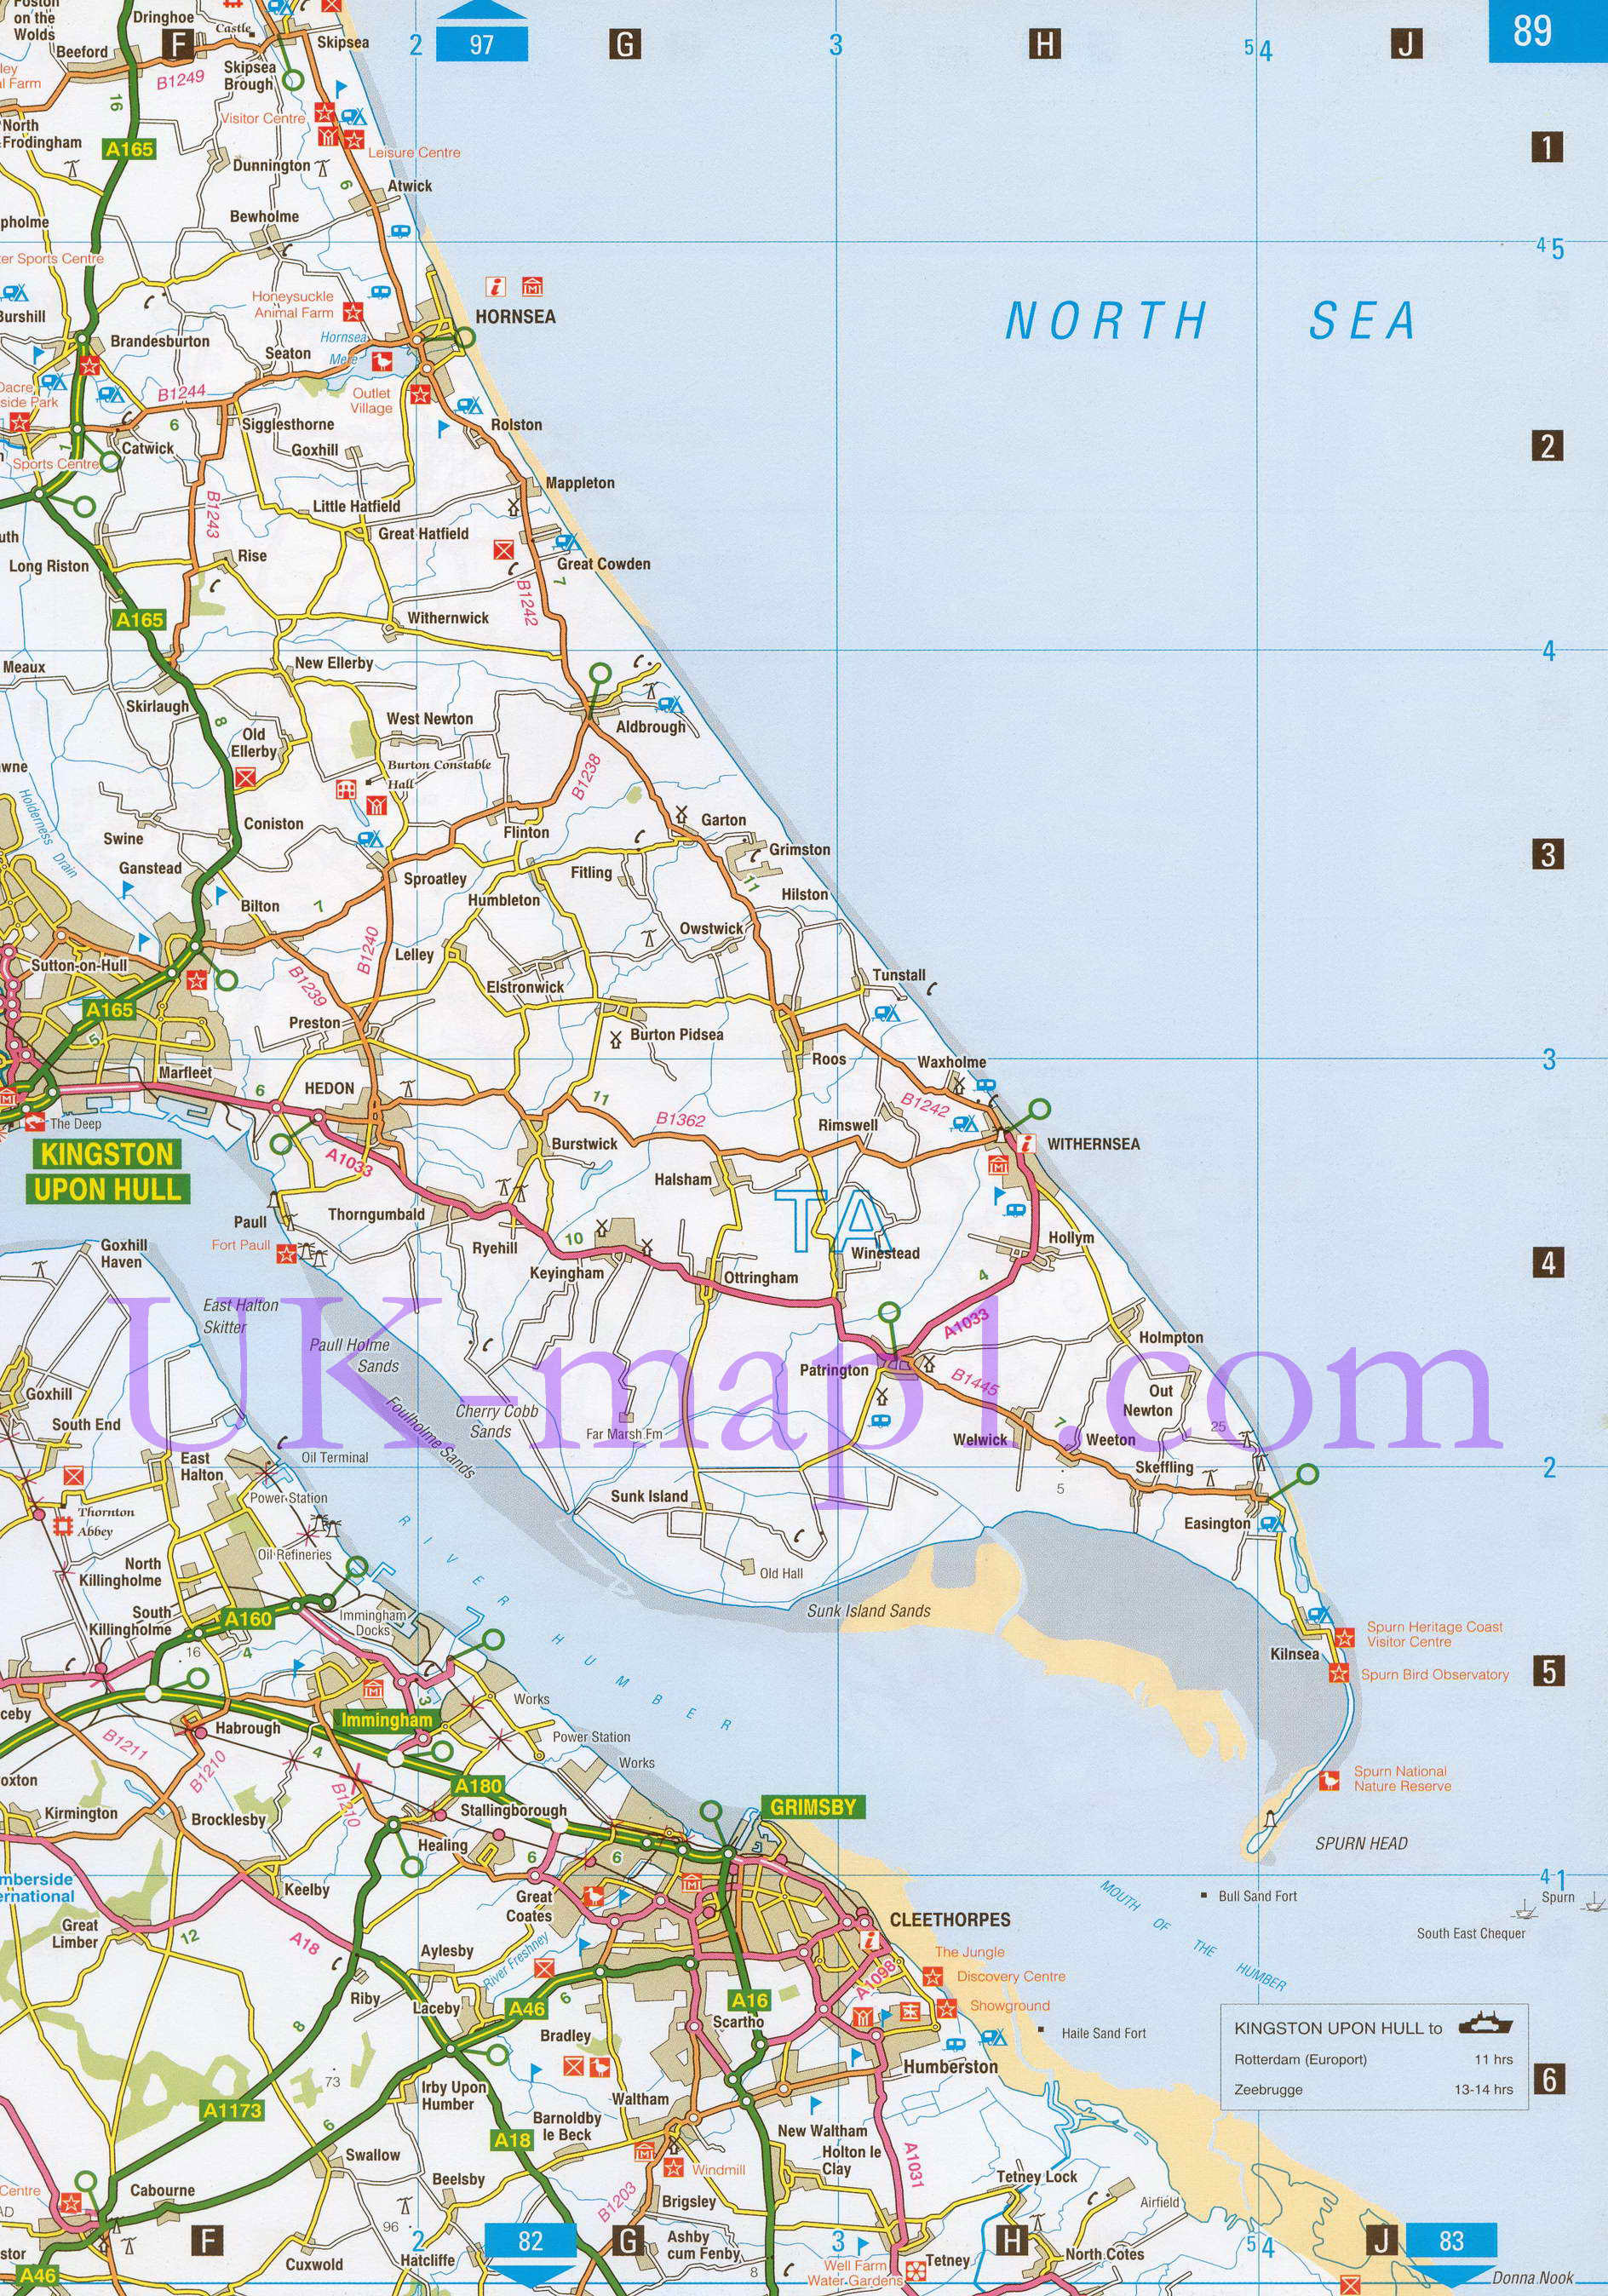 Карта Восточного Райдинга Йоркшира. Подробная карта - Восточный Райдинг Йоркшира (Англия), B0 - 